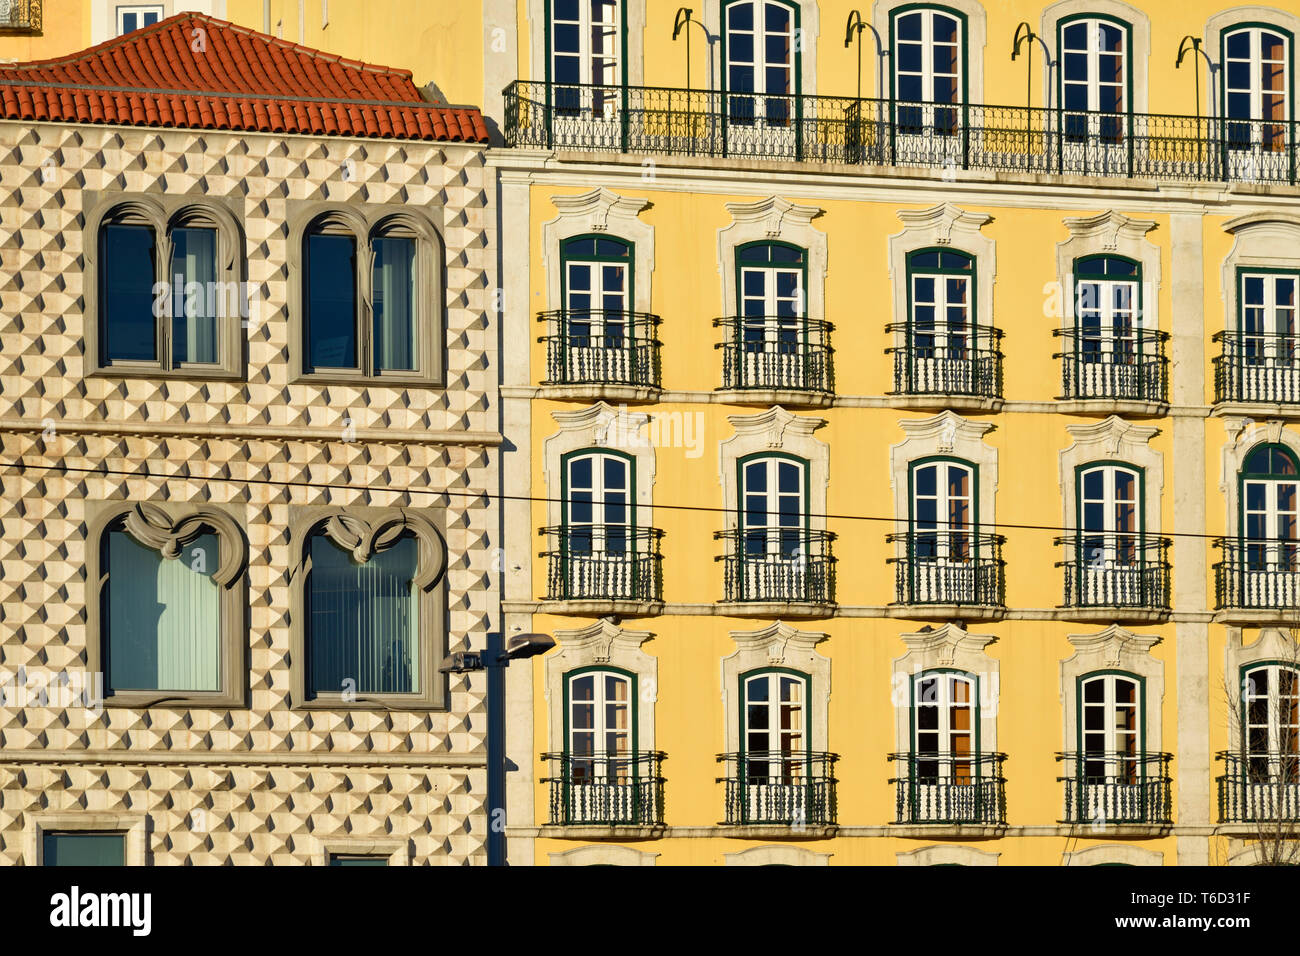 La Casa dos Bicos, une maison du xvie siècle, aujourd'hui la fondation la Jose Saramago, Prix Nobel de littérature 1998. Lisbonne, Portugal Banque D'Images